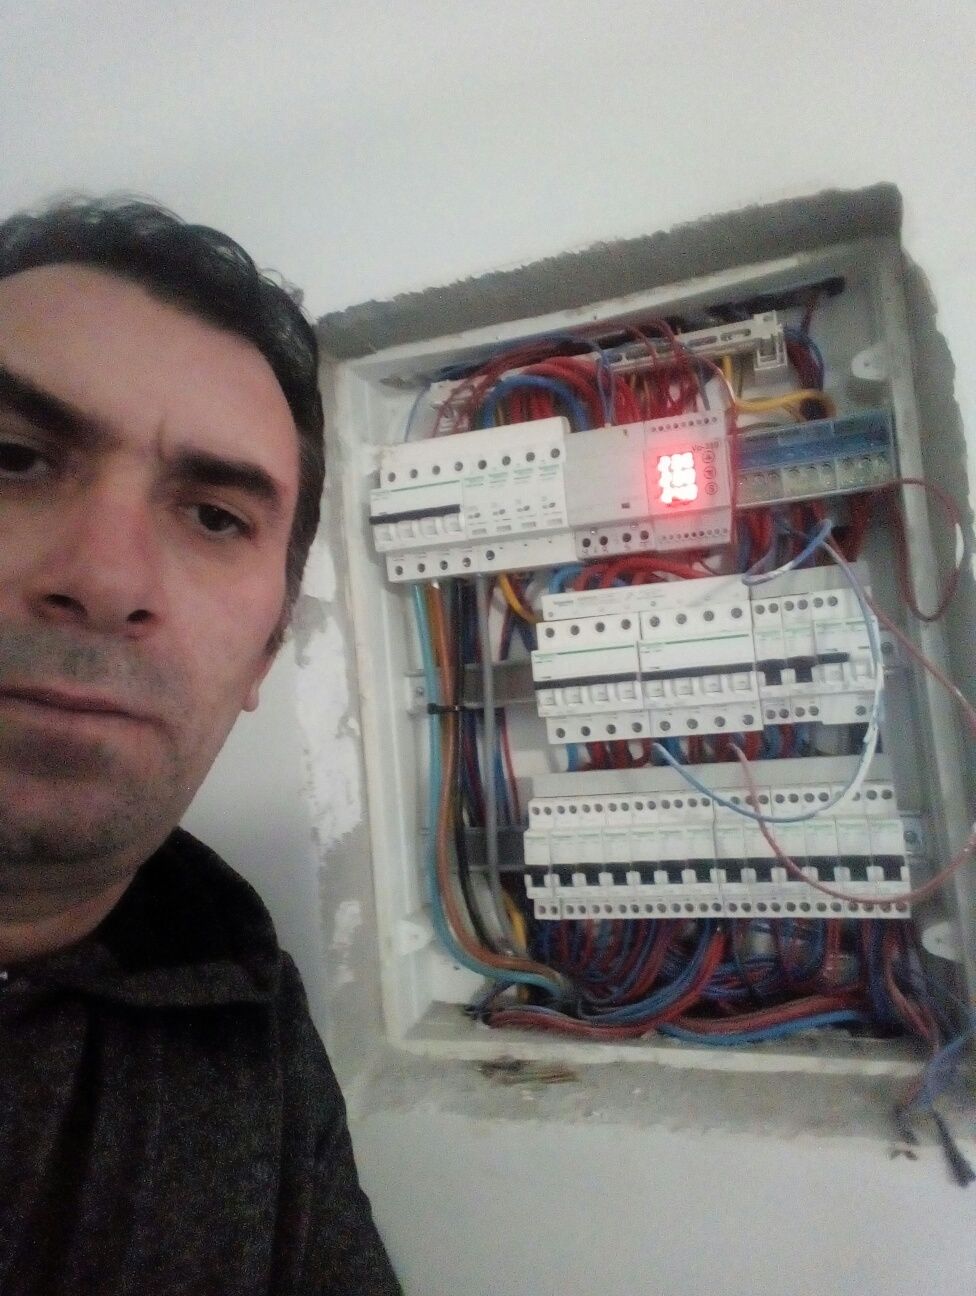 MAISTRU electrician autorizat PROFESIONIST